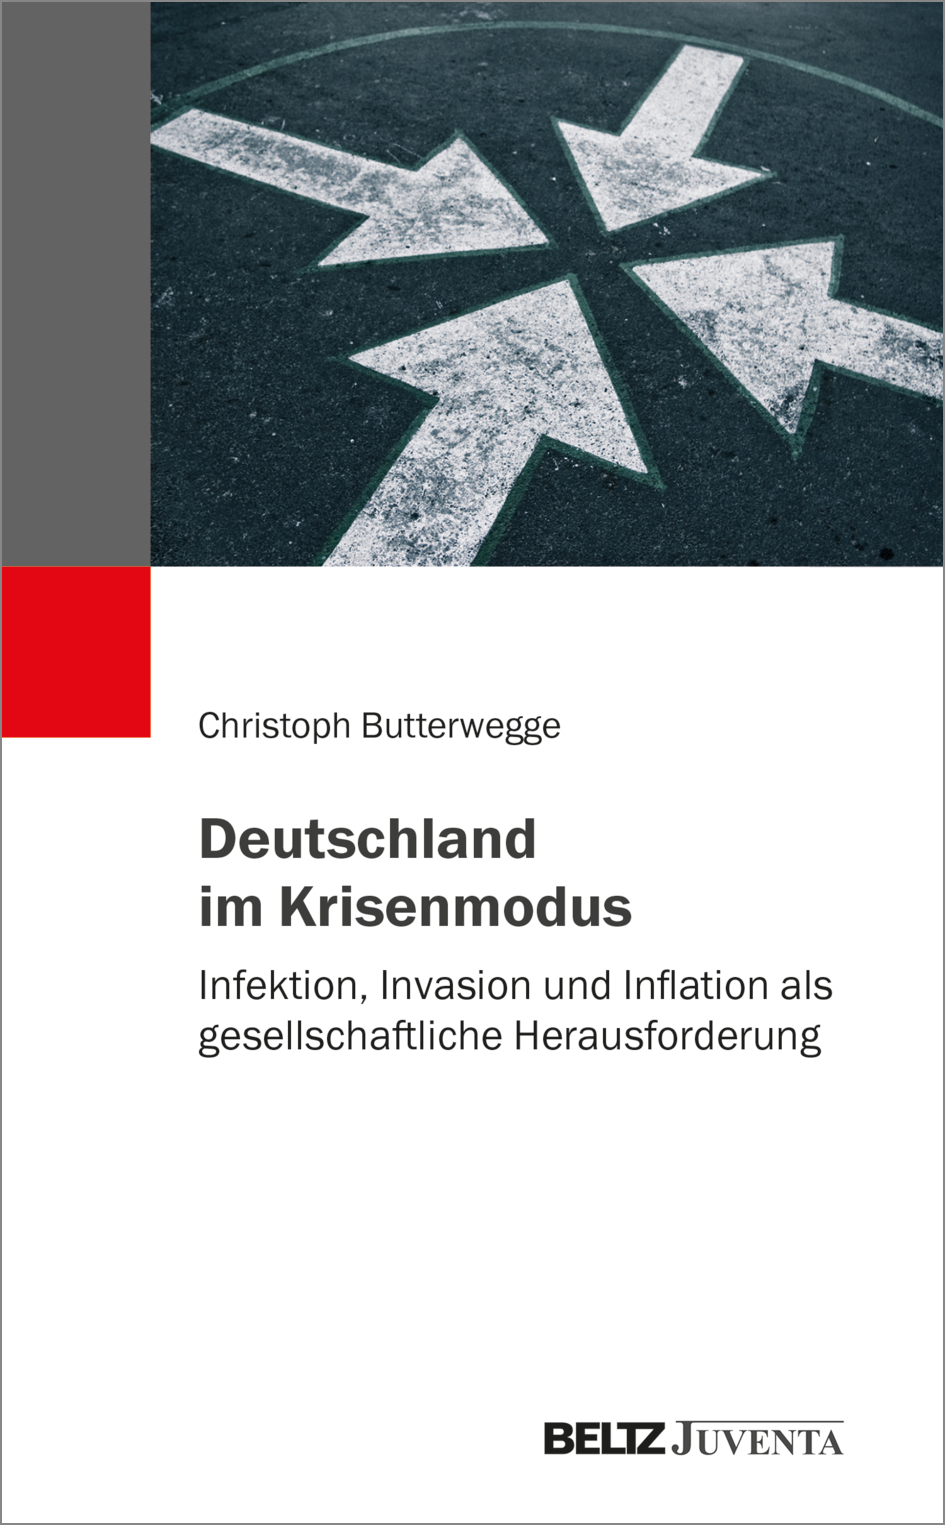 Das neue Buch von Professor Dr. Christoph Butterwegge.